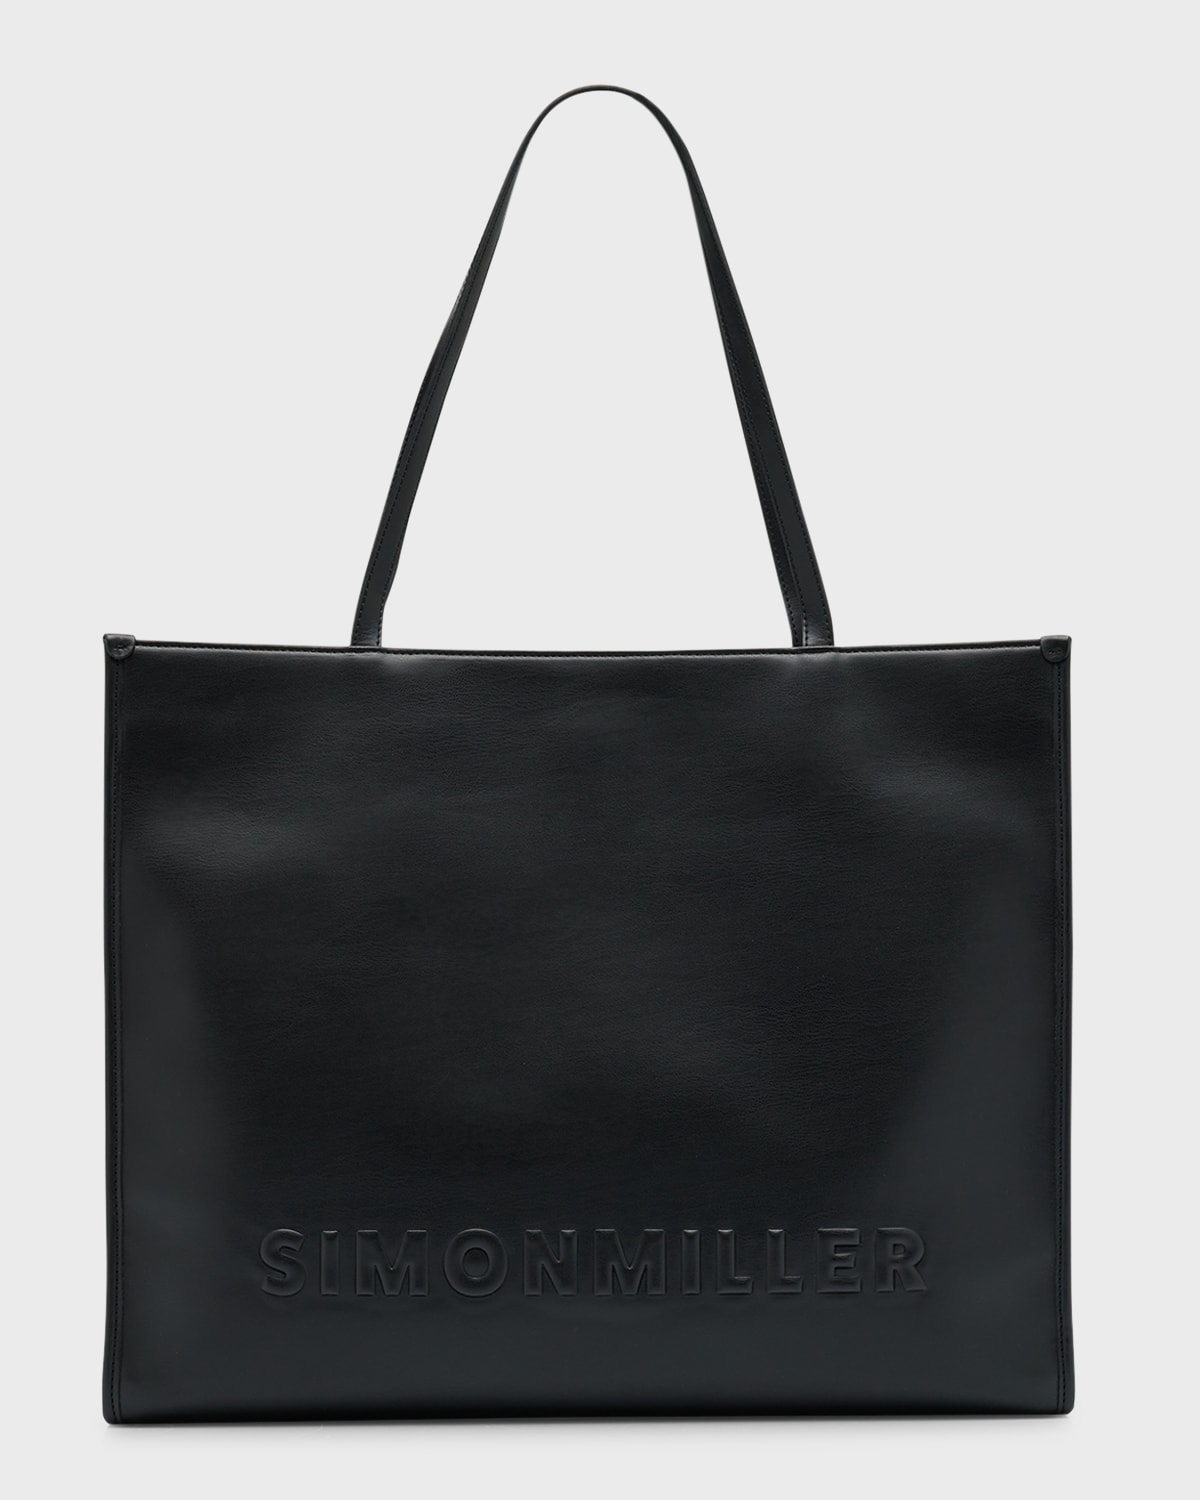 Simon Miller Studio Logo Metallic Leather Tote Bag | Neiman Marcus